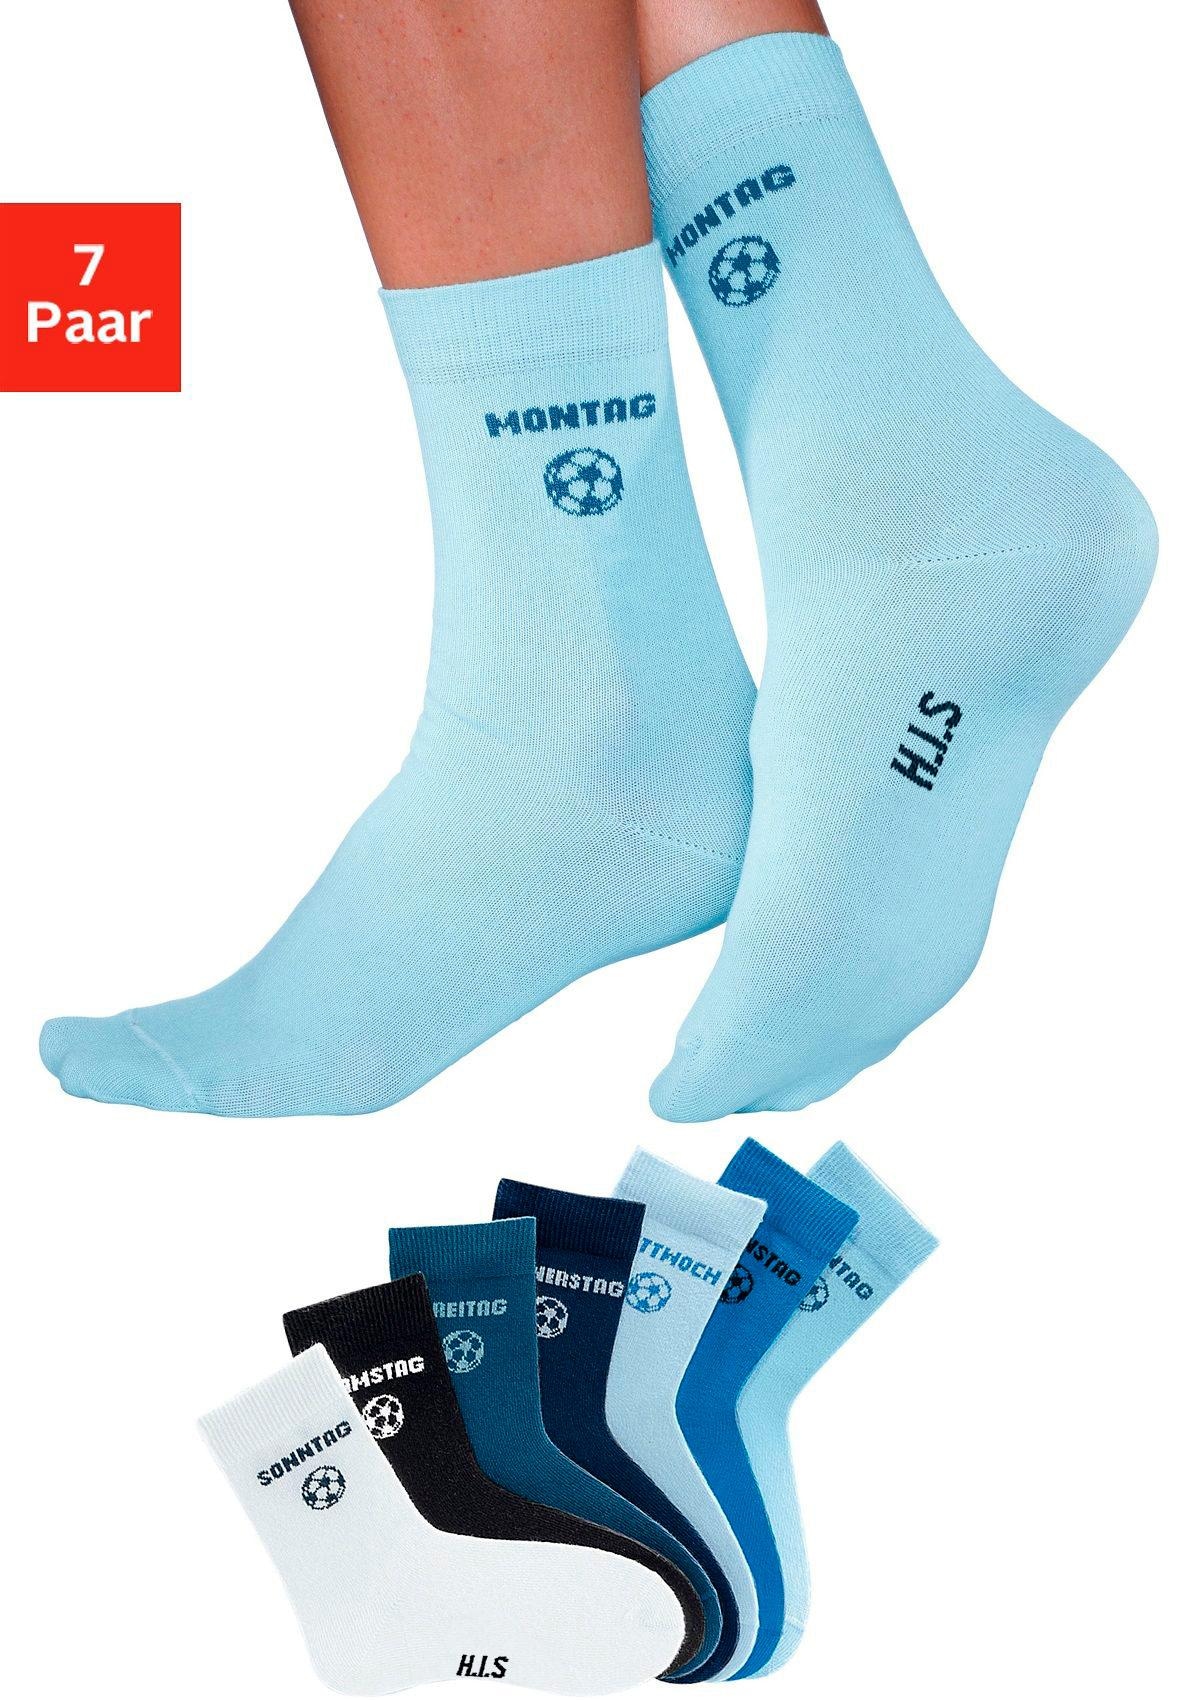 H.I.S Socken, (7 Paar), für Kinder mit Fußballmotiv bei